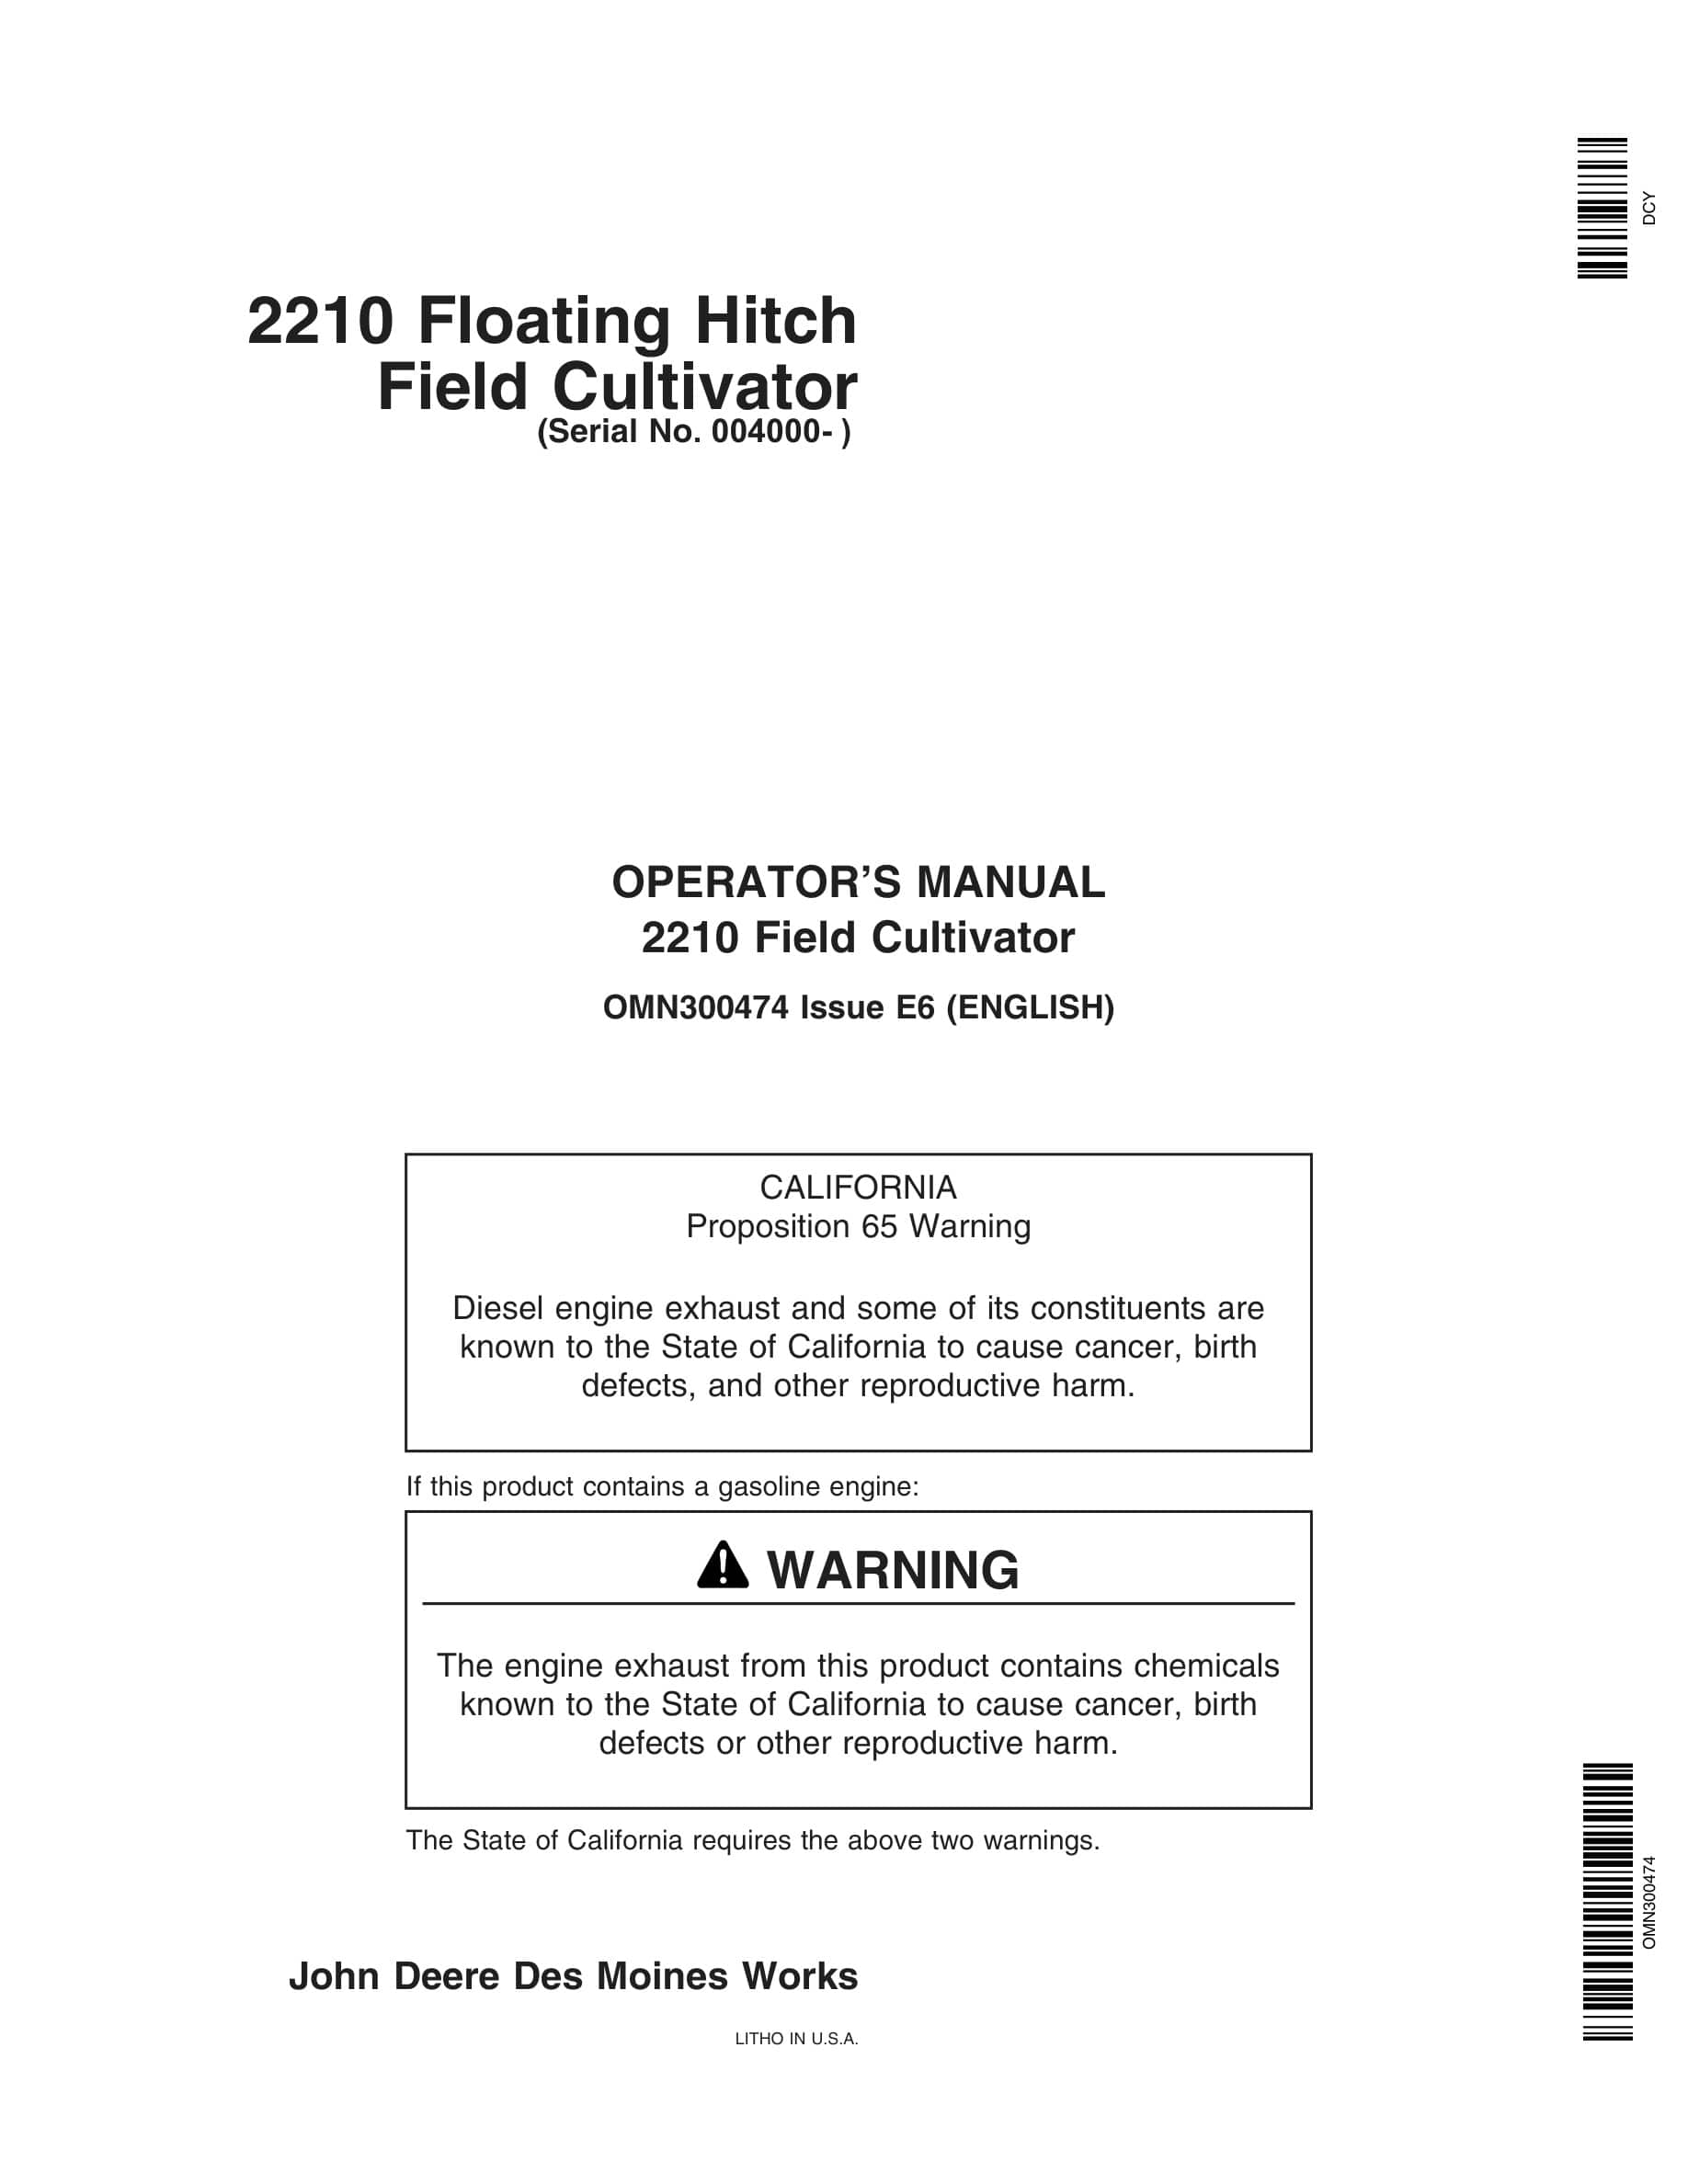 John Deere 2210 Floating Hitch Field Cultivator Operator Manual OMN300474-1